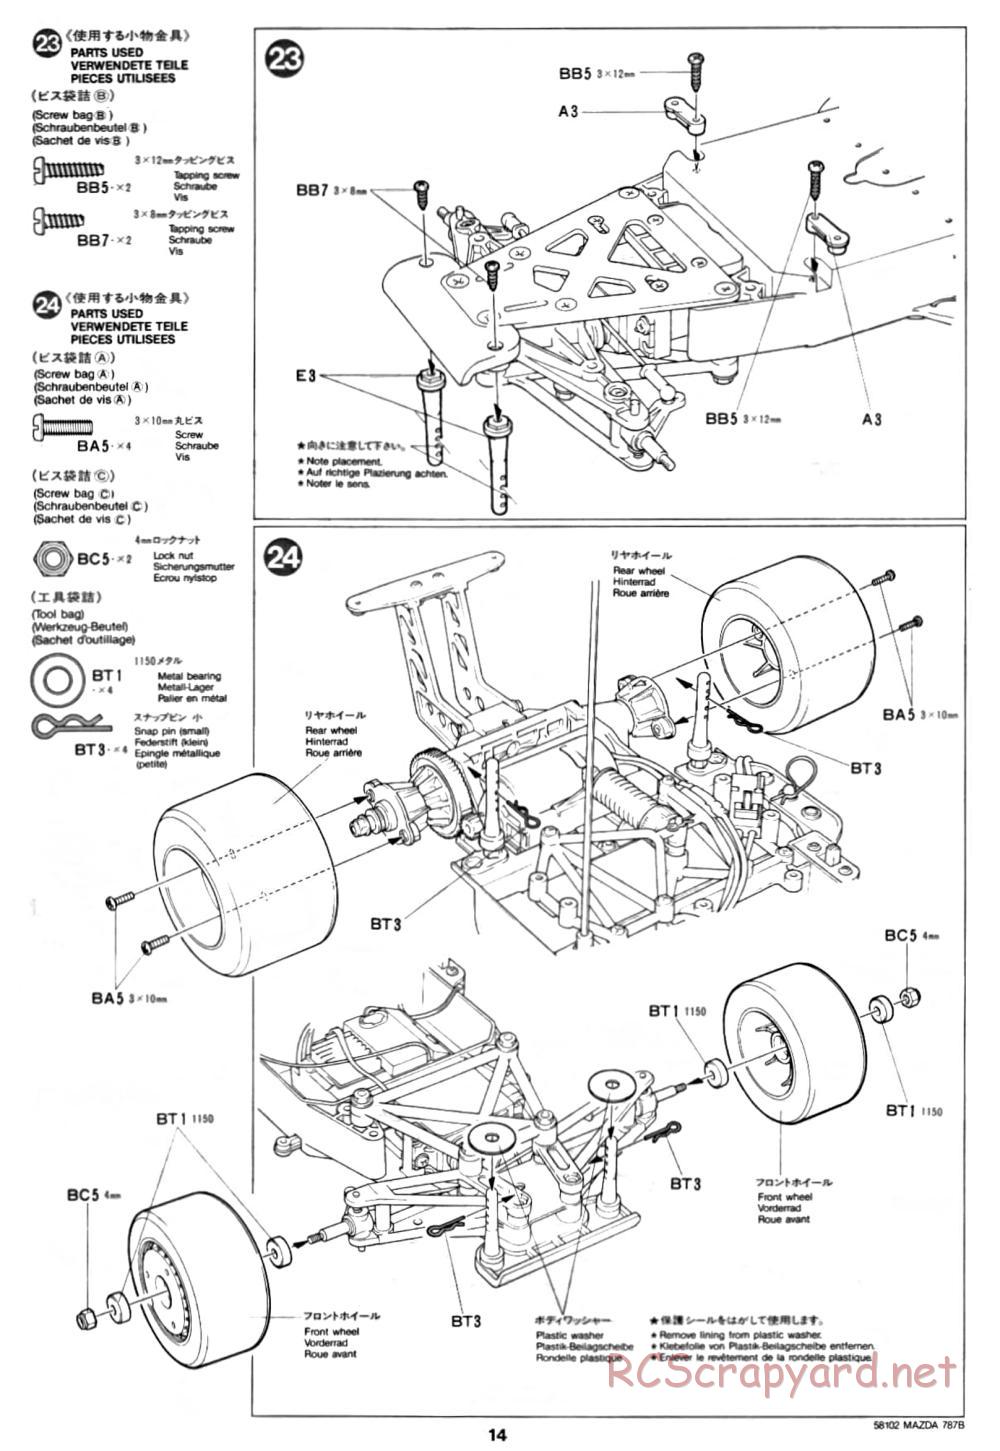 Tamiya - Mazda 787B - Group-C Chassis - Manual - Page 14